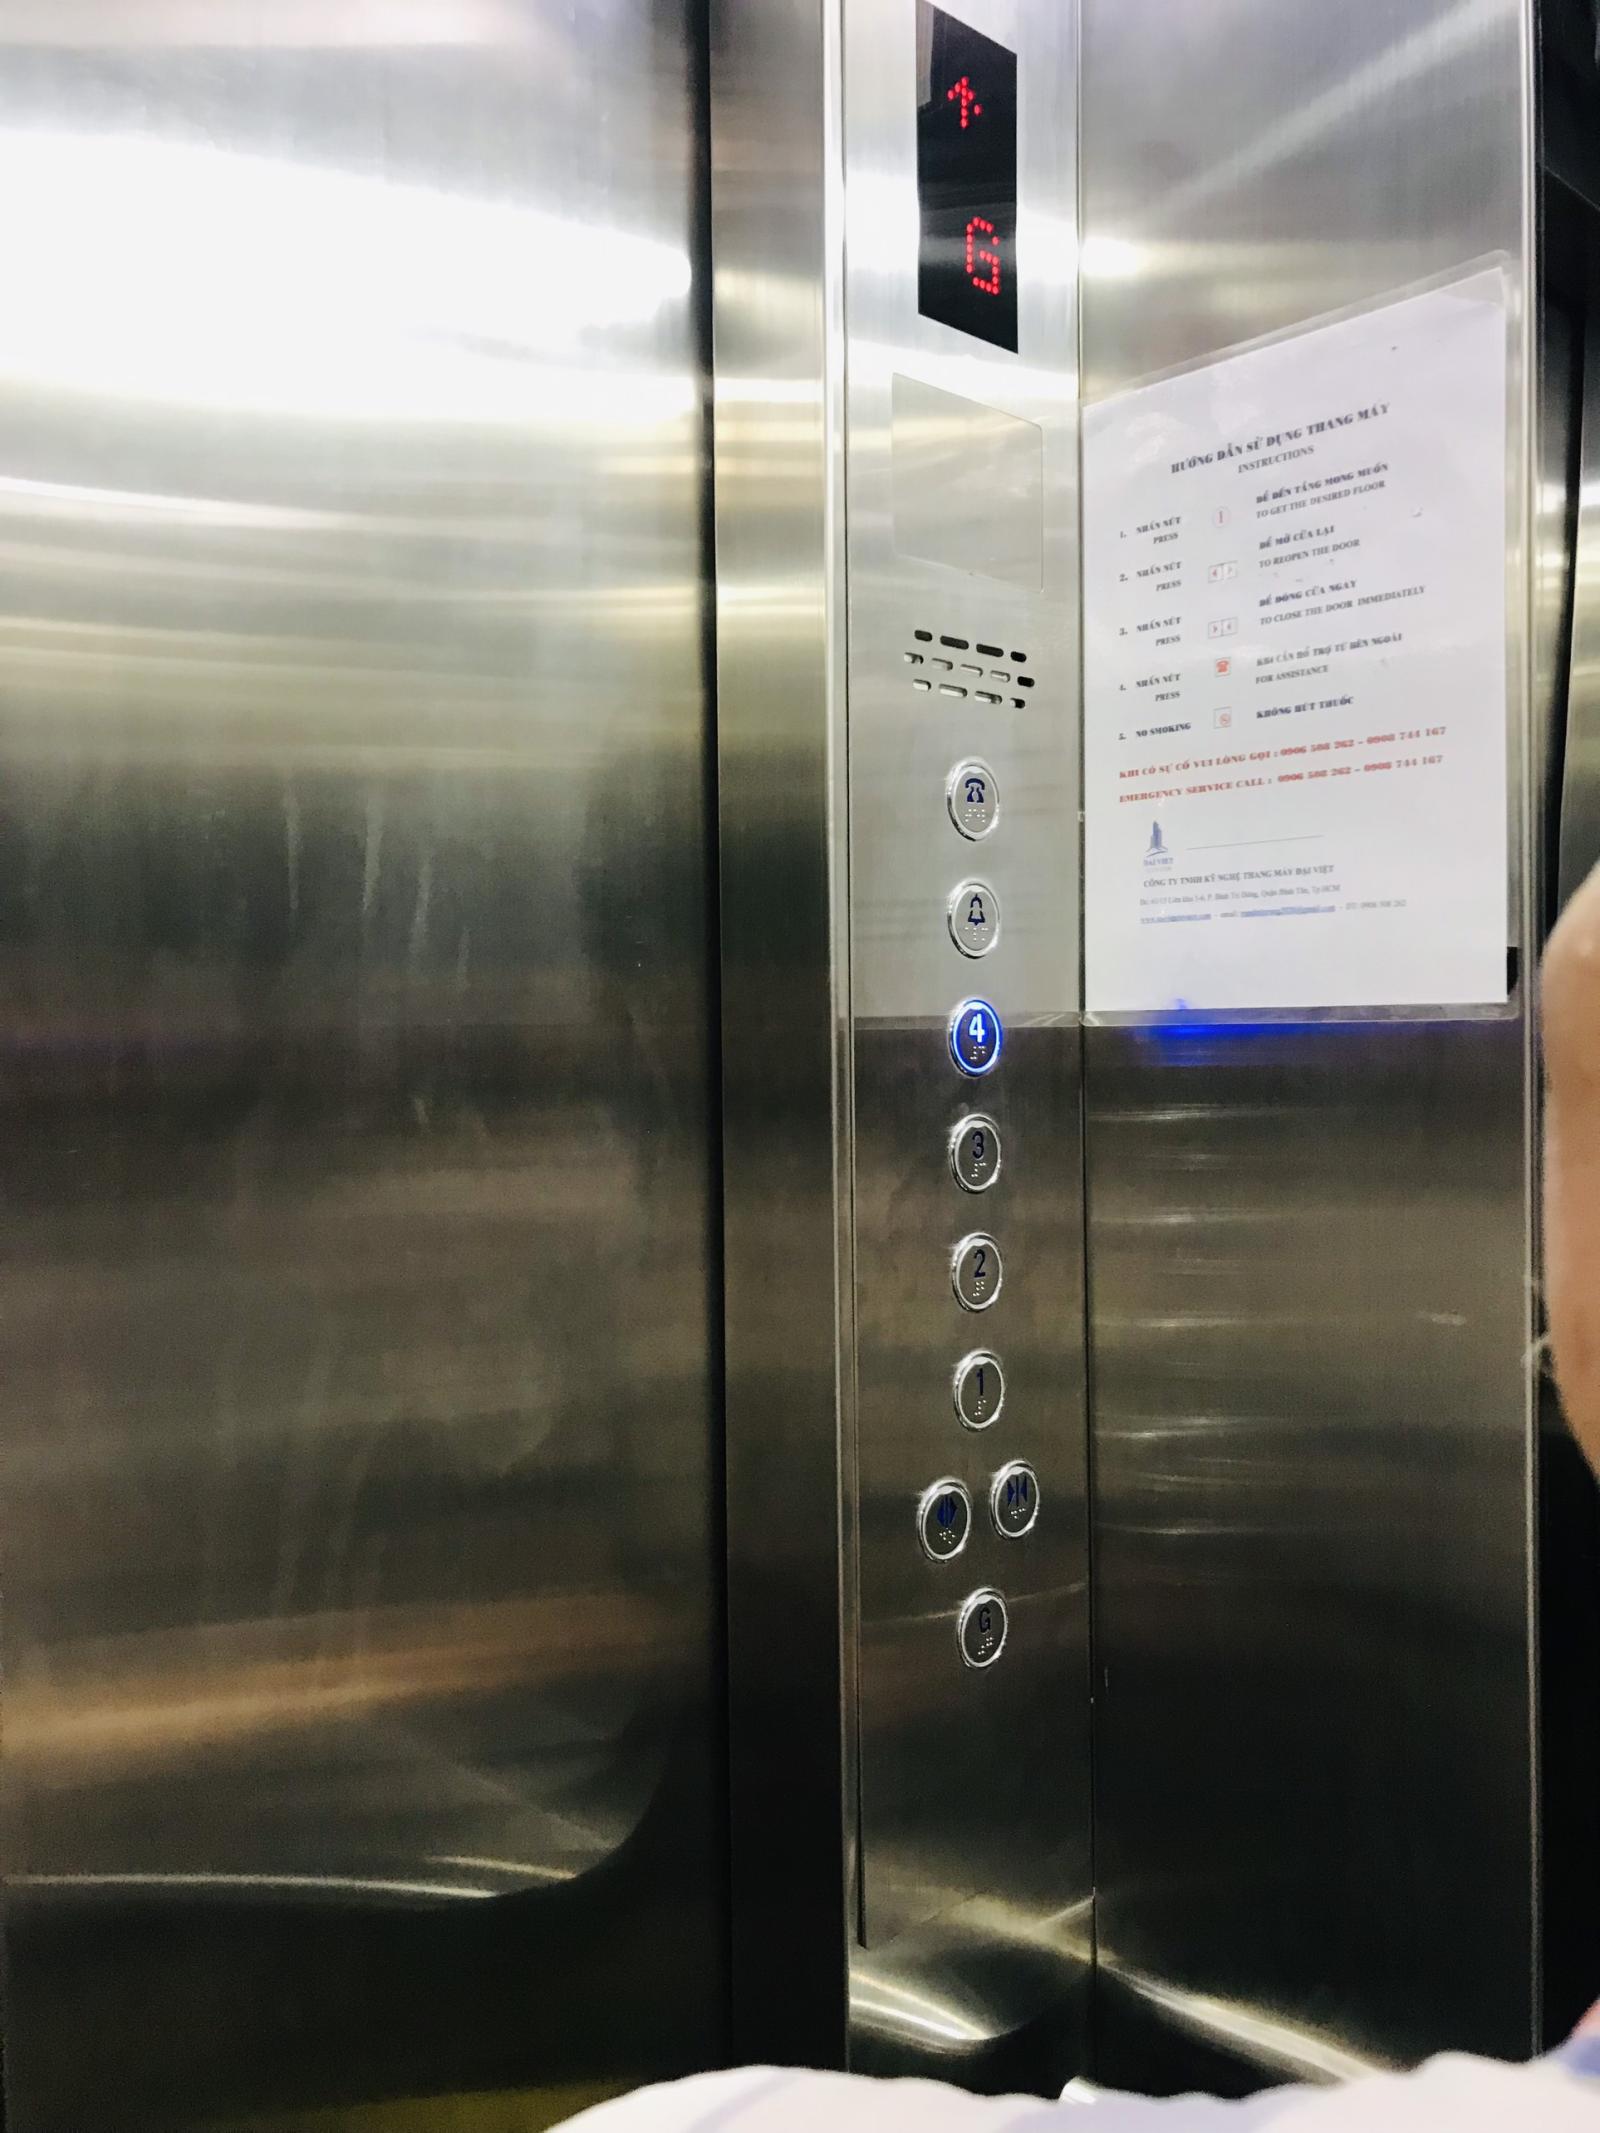 TÔI HẾT TIỀN! Bán nhà 65m2 mặt tiền Nguyễn Khuyến-Có thang máy trong nhà-Tặng Full nội thất xuất xứ JAPAN-Giá chỉ 11.5T TL.